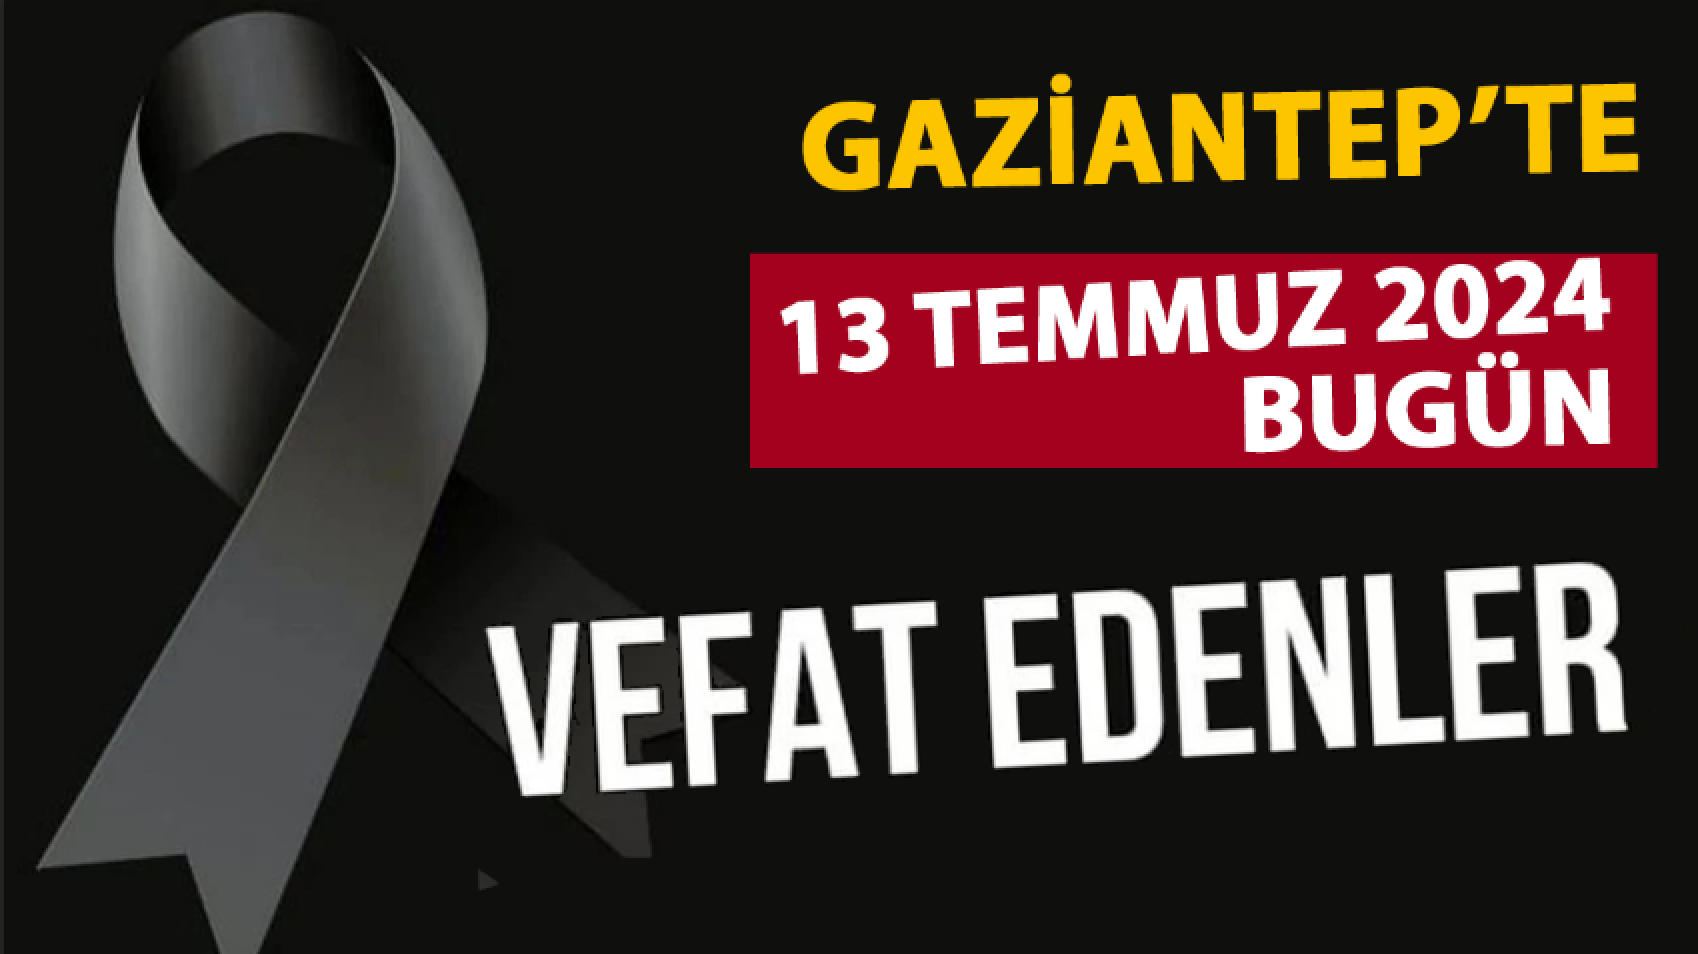 Gaziantep'in Vefat ve DEFİN Listesi! 13 Temmuz 2024  Cumartesi Gaziantep'te 29 Kişi Vefat Etti Ve Defin Edildi!